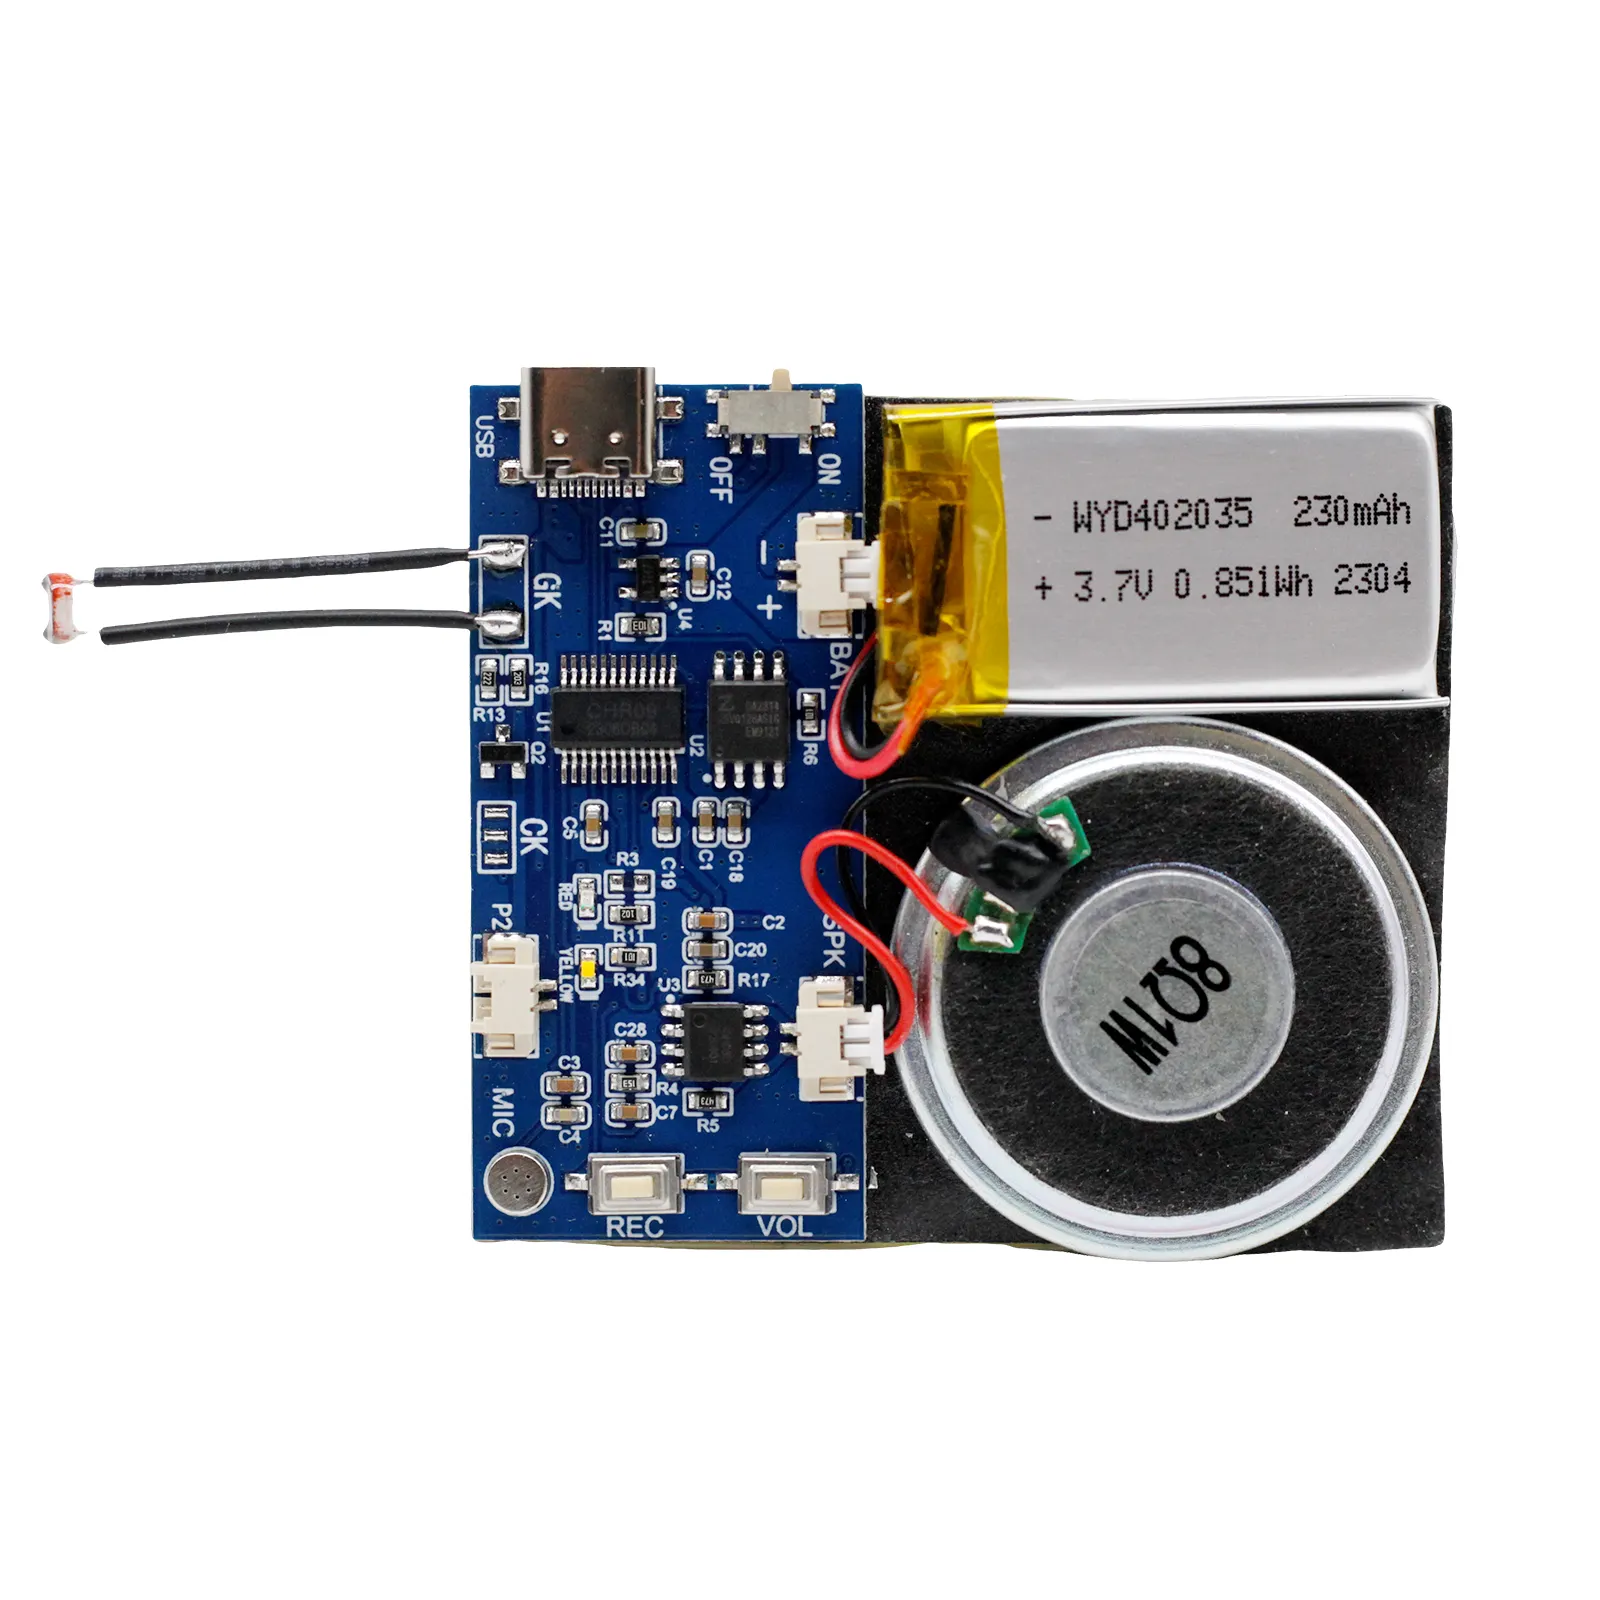 Hediye tebrik kartları hoparlörler için ışık sensörlü anahtar ses çipi ile USB indirilebilir tebrik kartı ses modülü